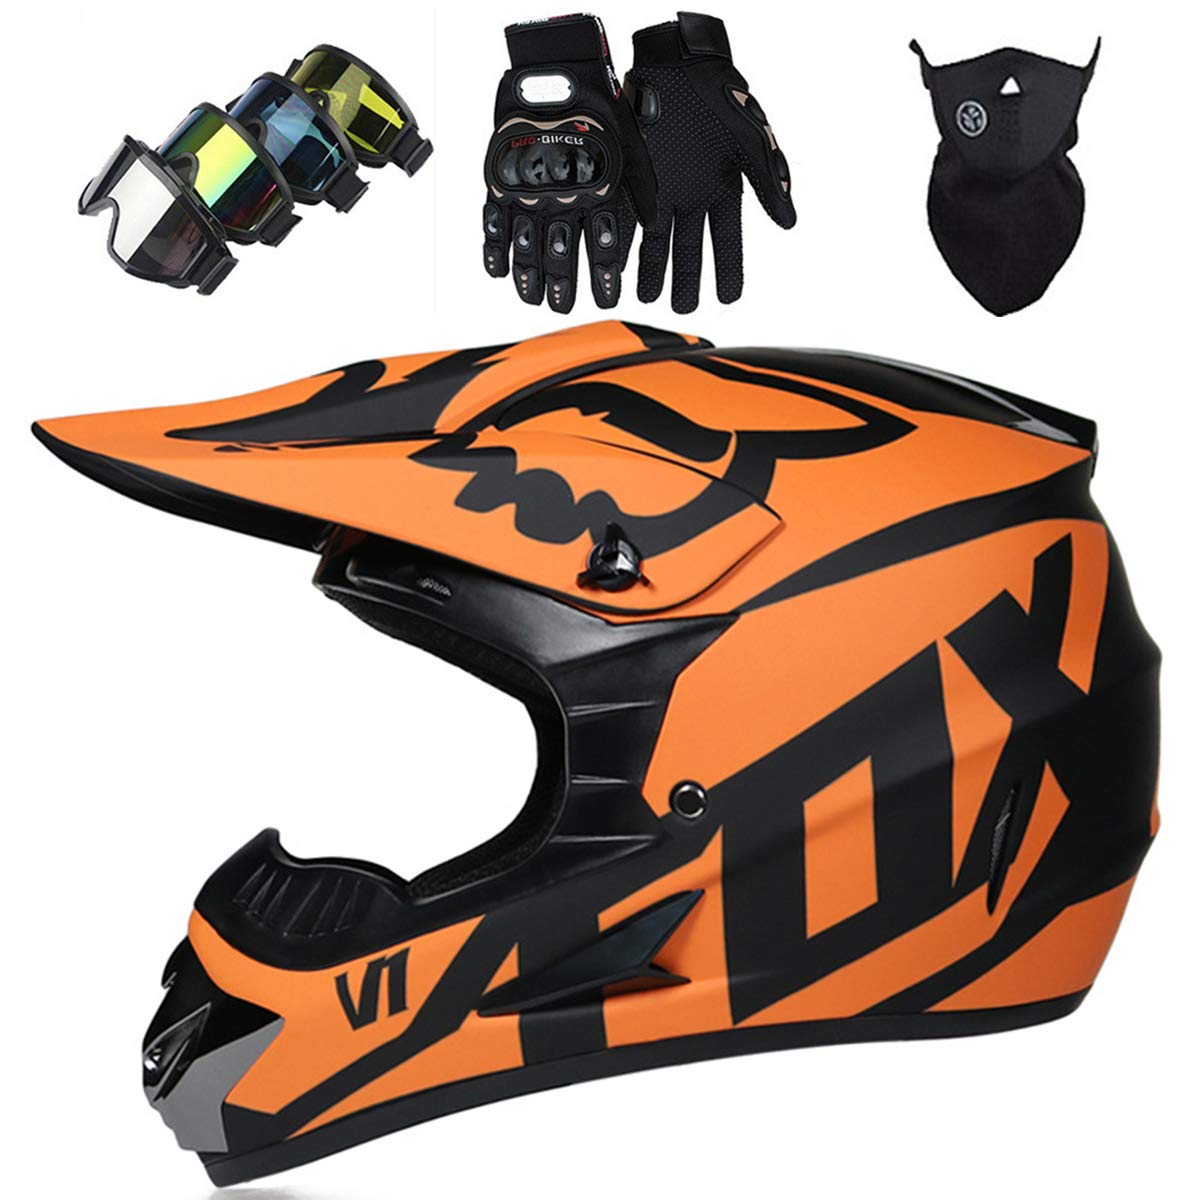 Motorradhelm - JMY-01 Motocross Helm Set - Dirt Bike Fullface Offroad Motorrad Helm mit Schutzbrille Geeignet für Kinder von 5 Bis 14 Jahren mit Fox Design - Matte Schwarz Orange - S/M/L/XL,S von KIVEM